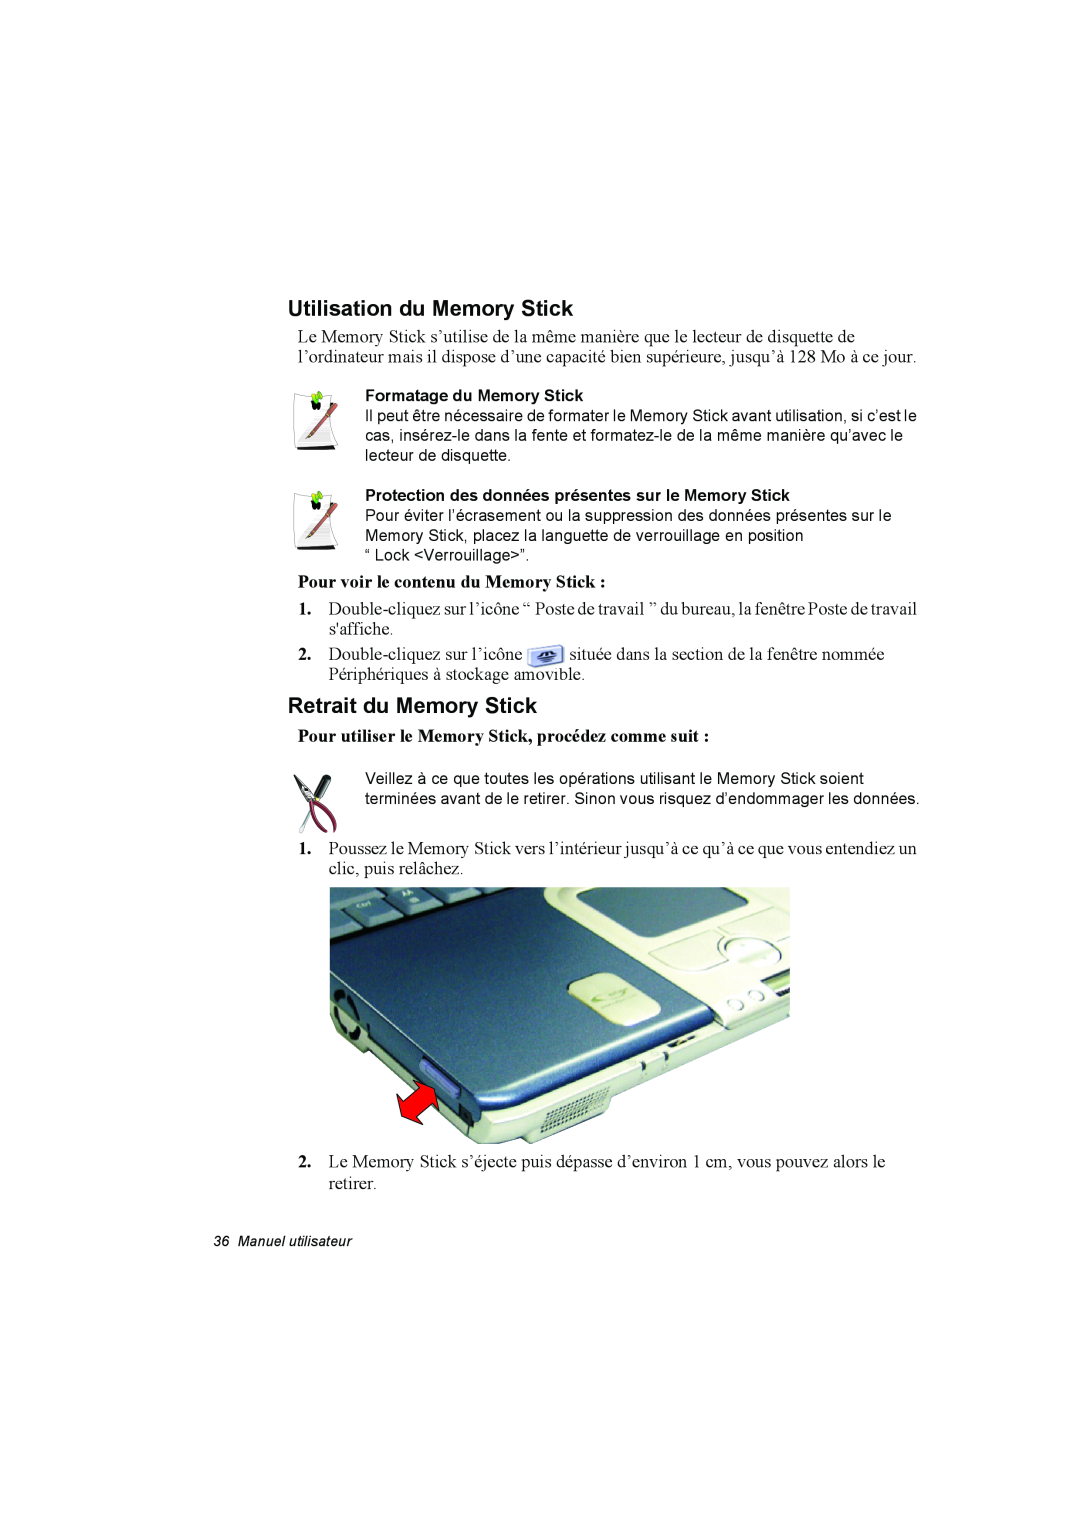 Samsung NP10FK033Q/SEF manual Utilisation du Memory Stick, Retrait du Memory Stick, Pour voir le contenu du Memory Stick 